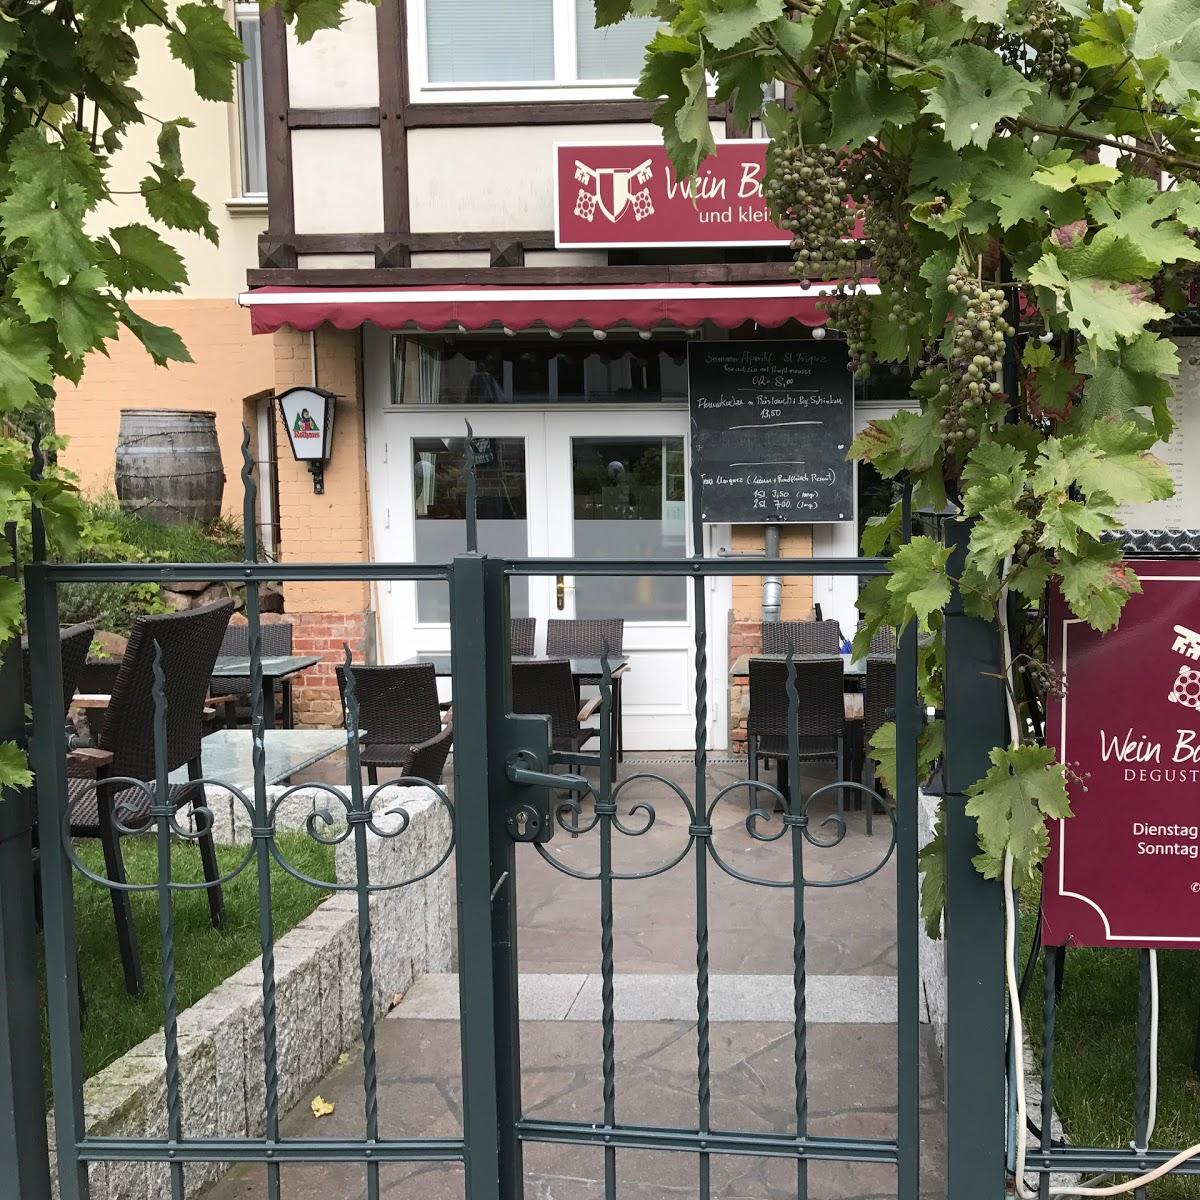 Restaurant "Wein Bar Chateauneuf" in Berlin